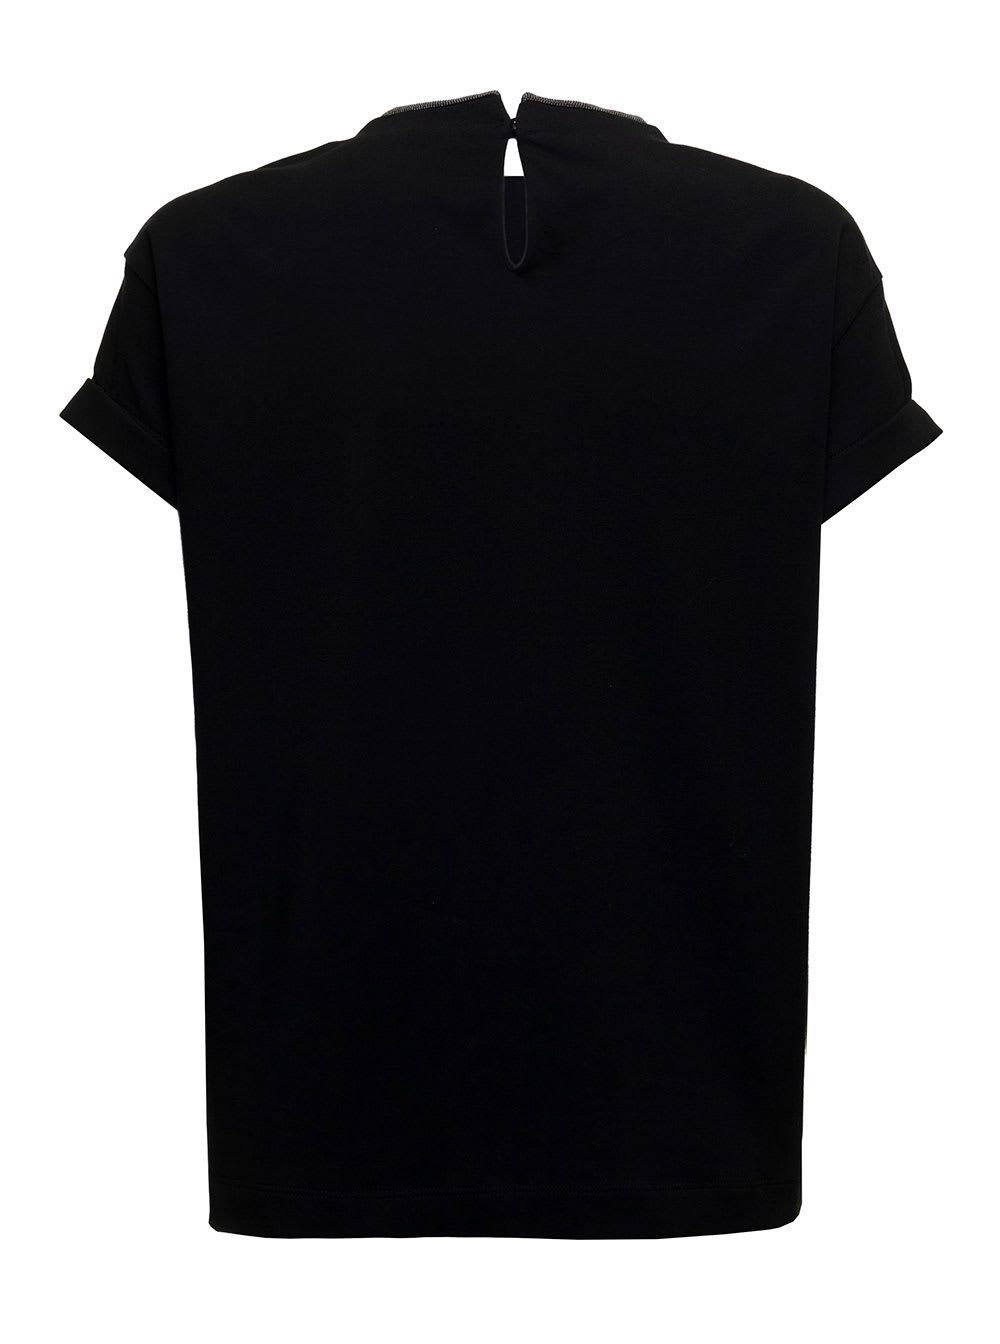 Shop Brunello Cucinelli Womans Black Cotton T-shirt With Monile Crew Neck